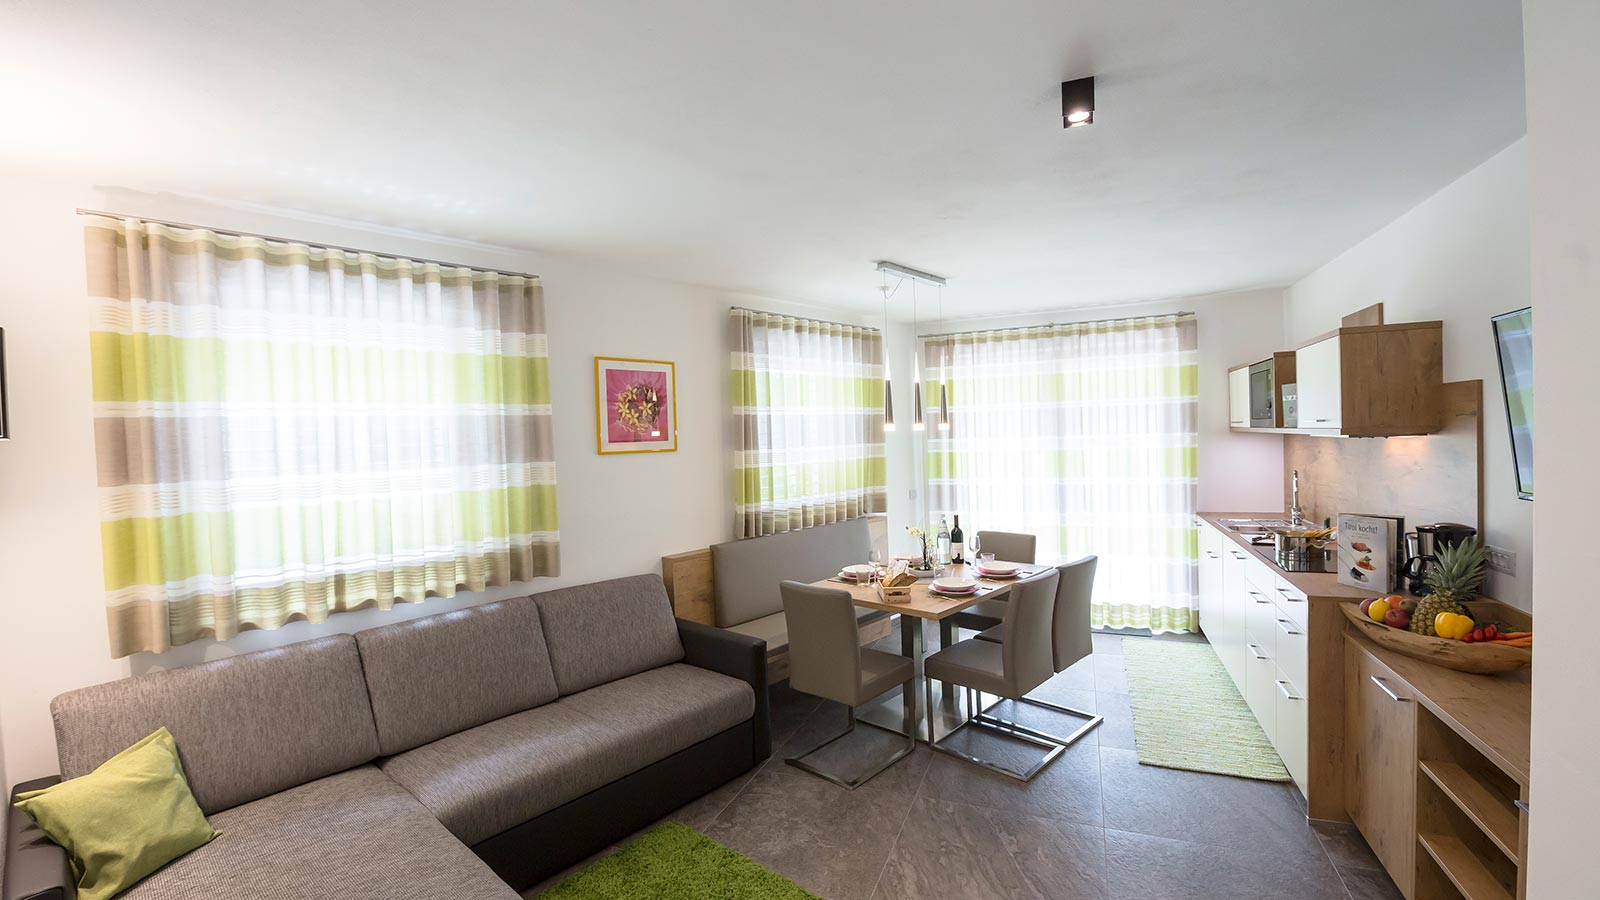 Blick auf die Küche und das Wohnzimmer einer der Ferienwohnungen des Hotels Maibad